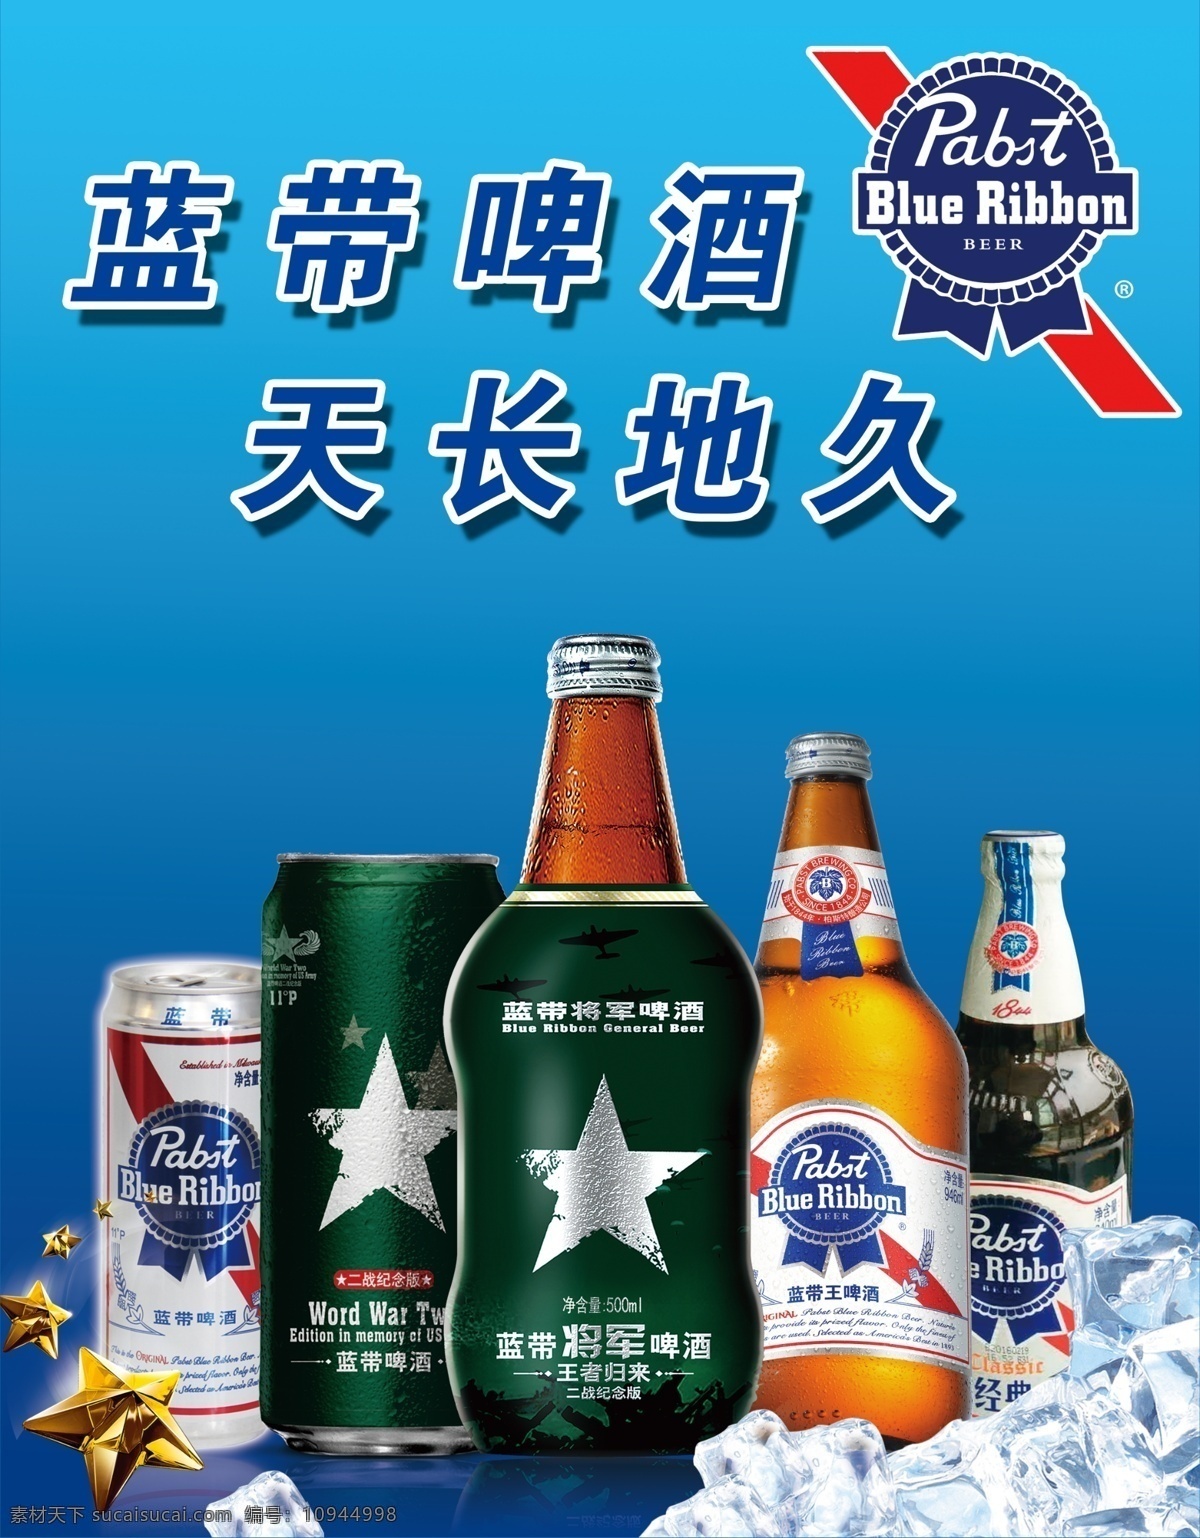 蓝带啤酒 蓝带啤酒标 酒瓶 瓶子 冰块 分层